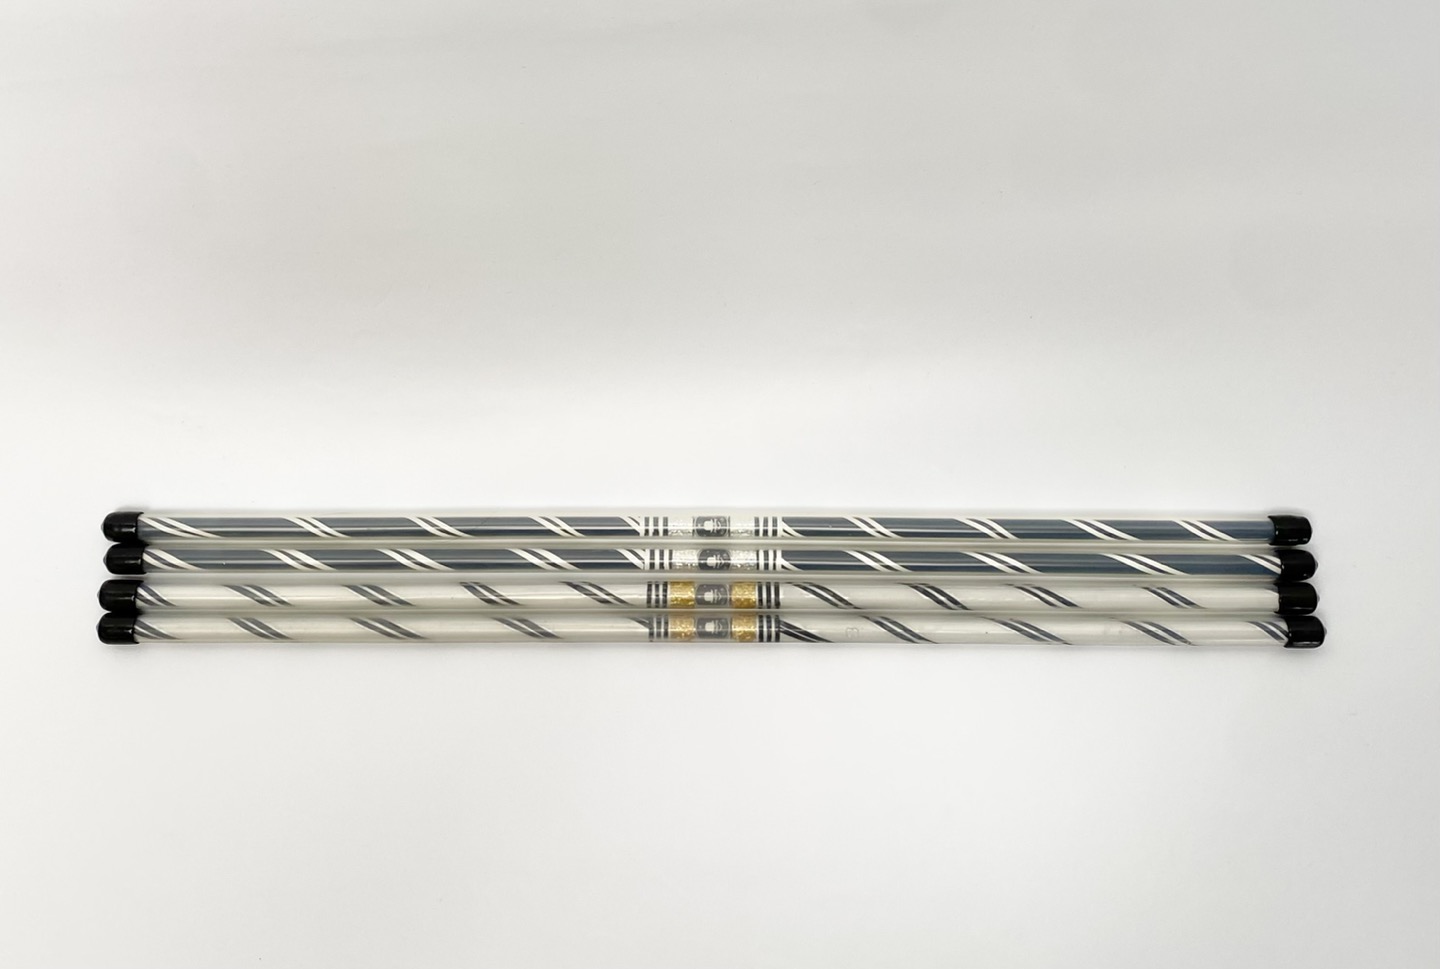 KKi-SU&#039;s Hand Stick - (black)KKi-SU&#039;s Hand Stick - (black)